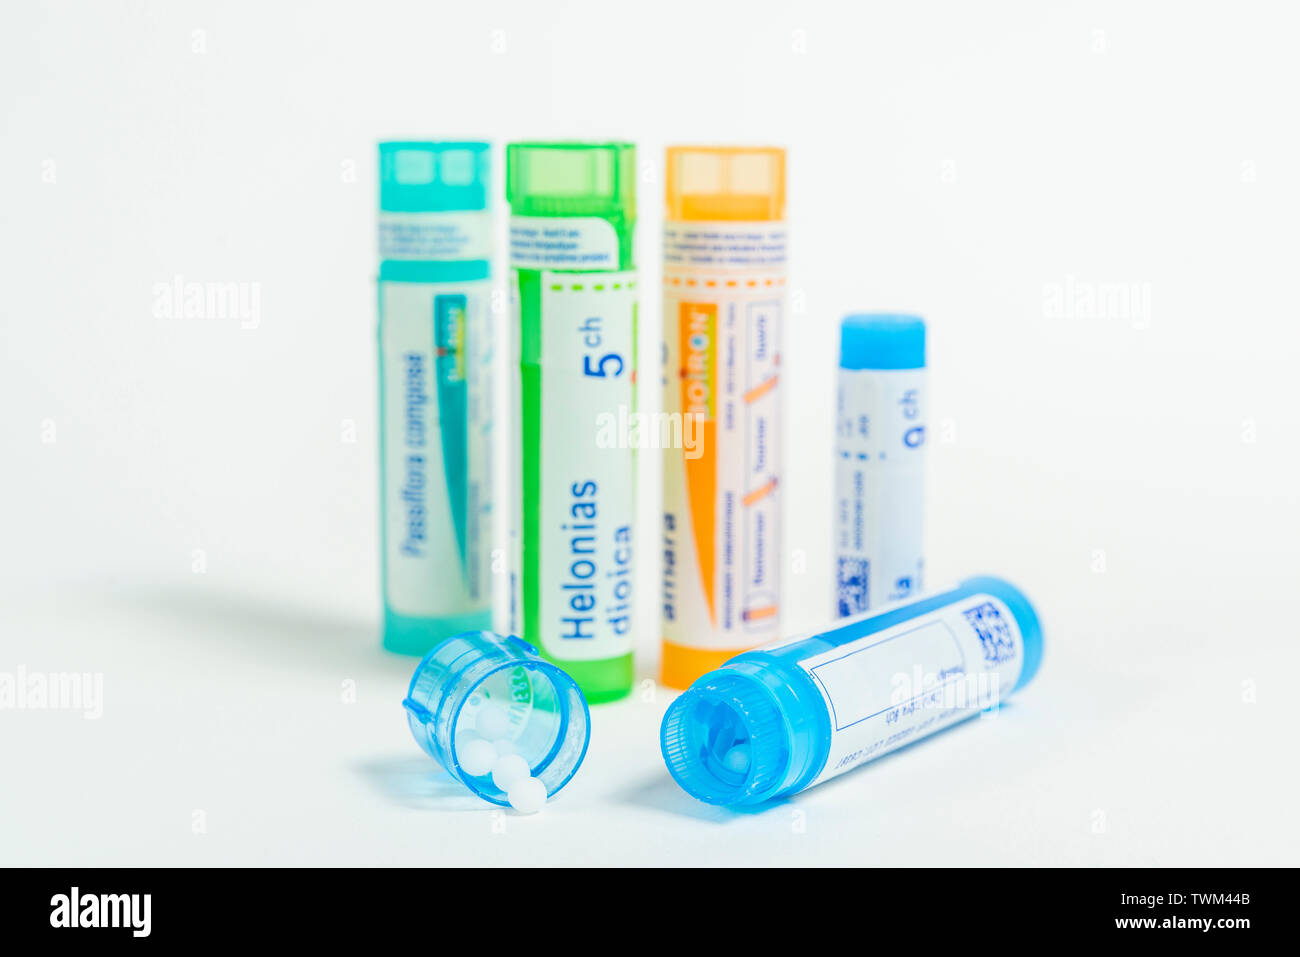 Tubos homeopático: gránulos homeopáticos, tubos de los Laboratorios Boiron Foto de stock